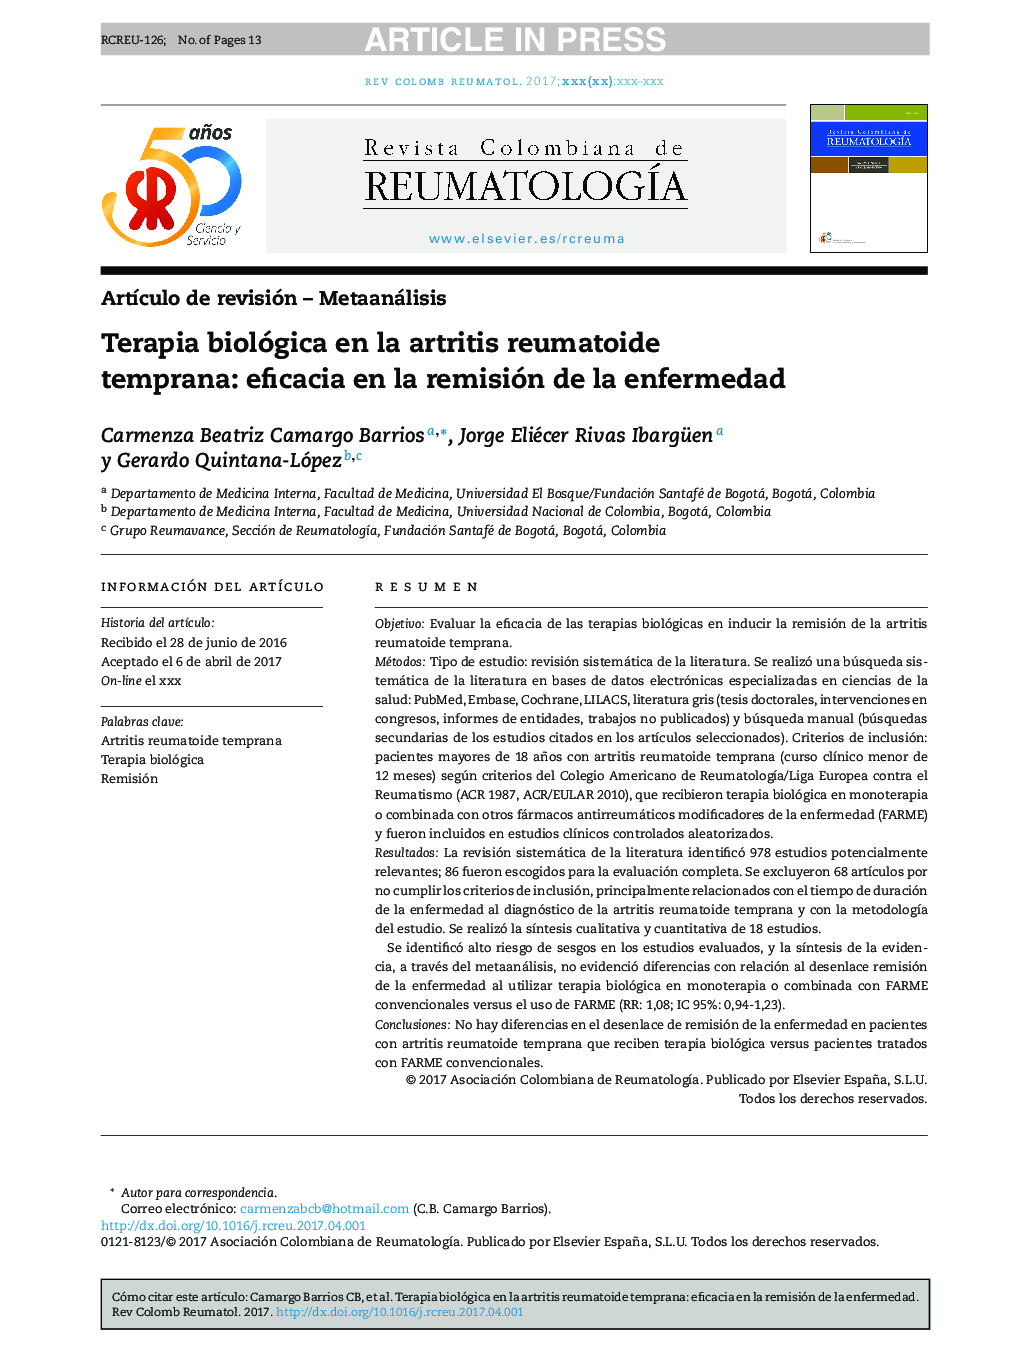 Terapia biológica en la artritis reumatoide temprana: eficacia en la remisión de la enfermedad